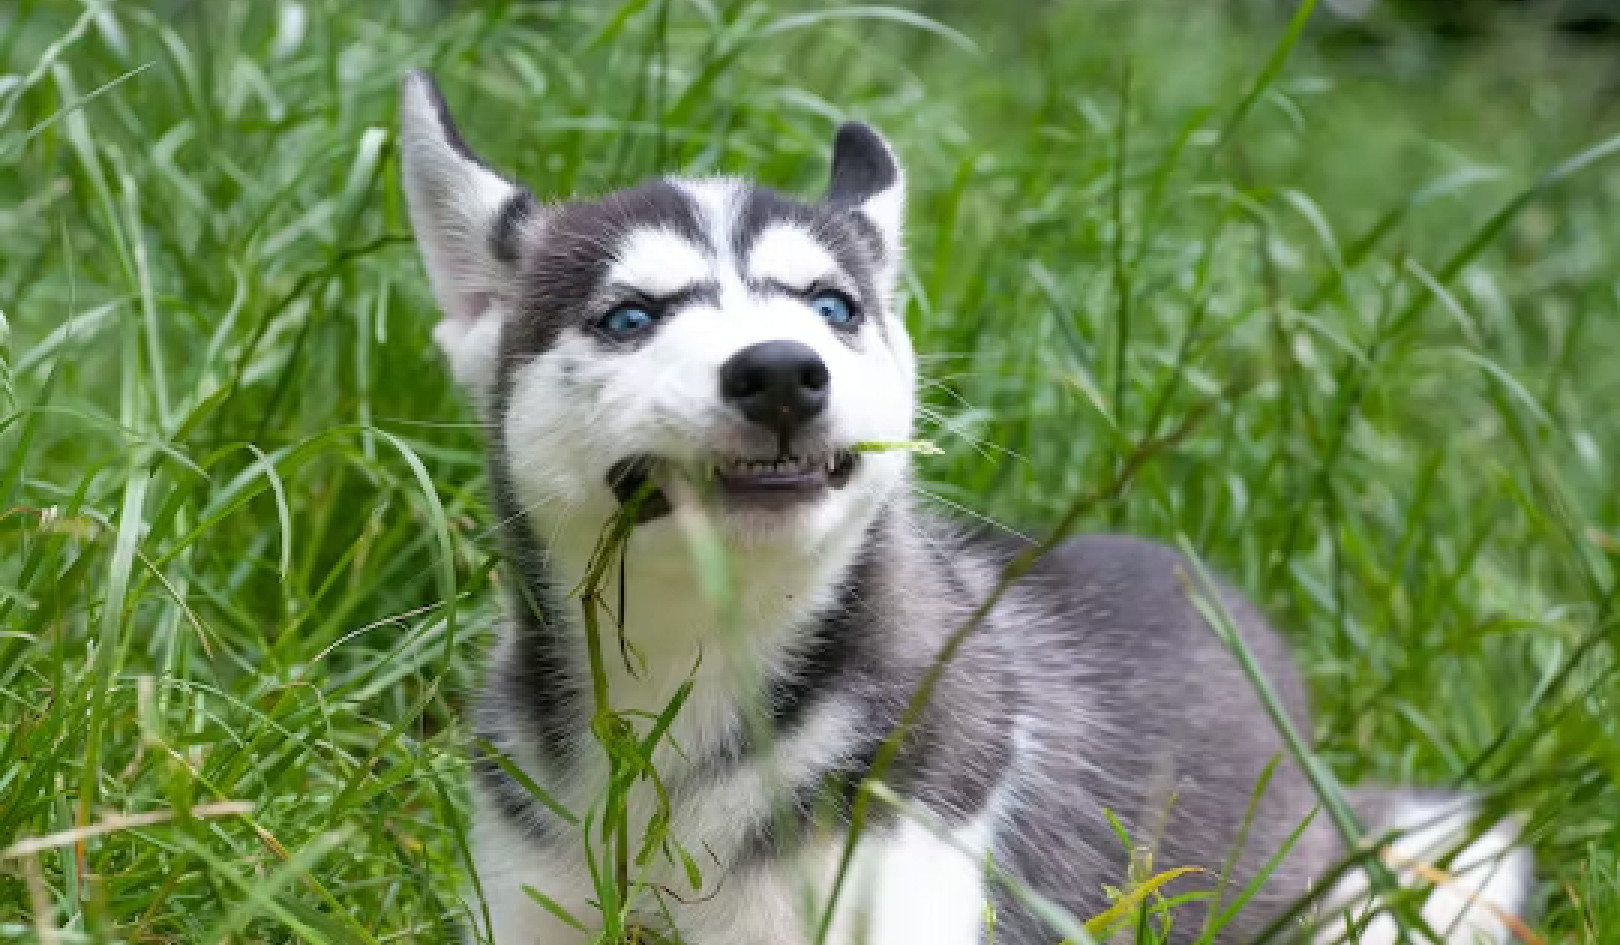 لماذا يأكل كلبي العشب؟ كشف الغموض